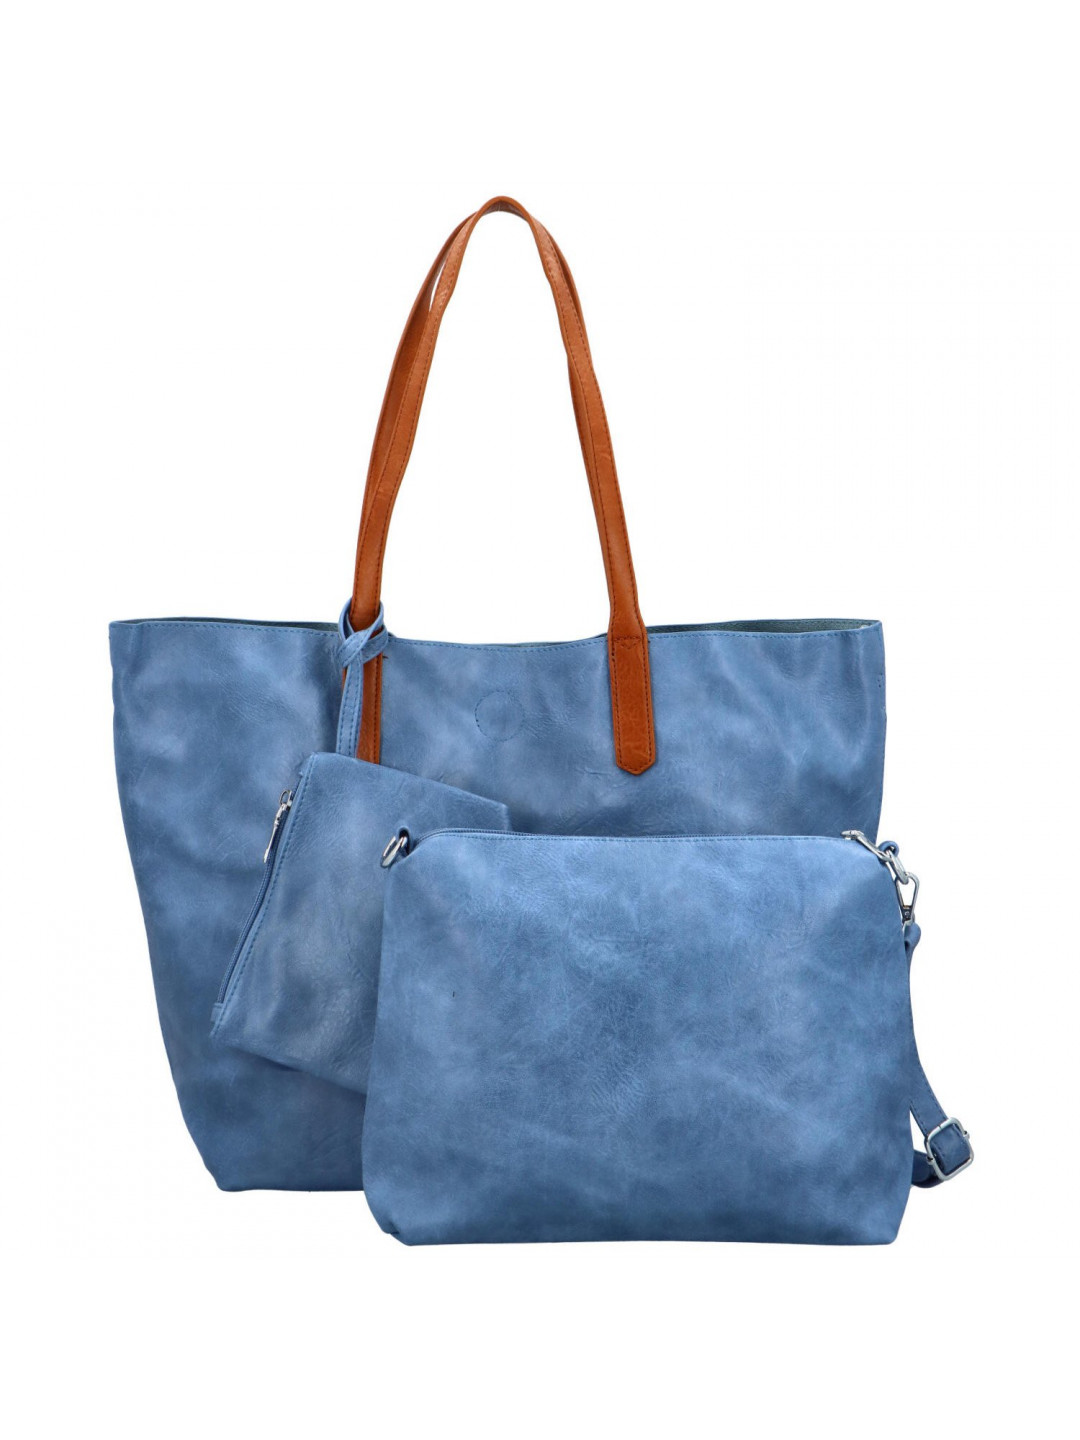 Trendy dámská koženková kabelka 2v1 na rameno Ignáta modrá